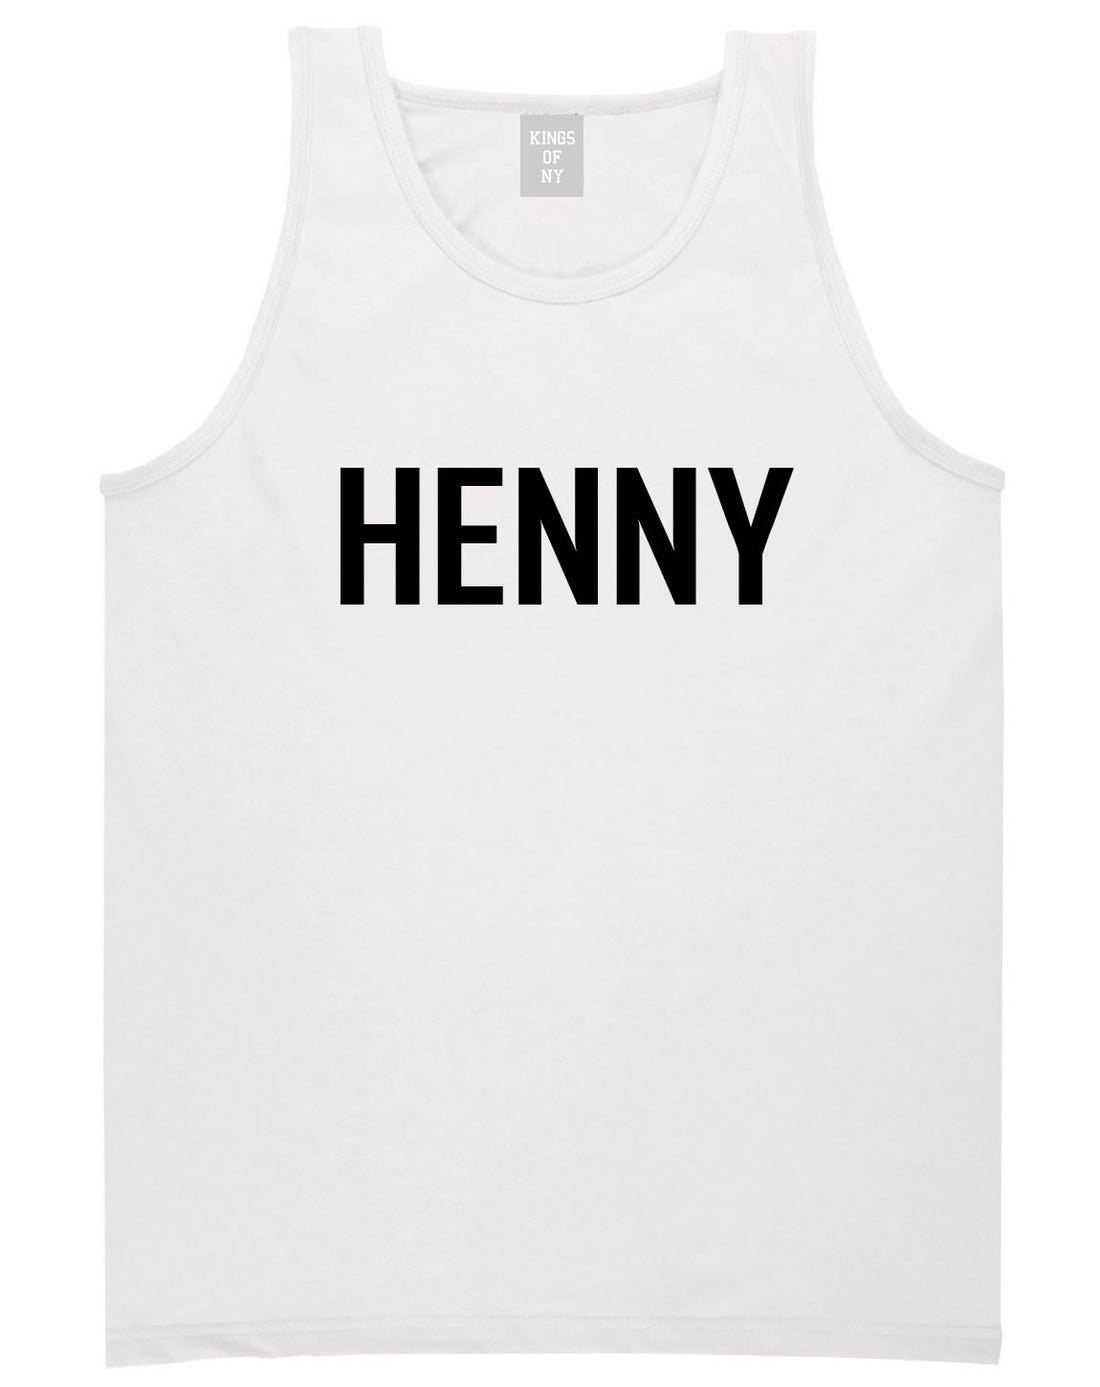 Henny Tank Top by Kings Of NY